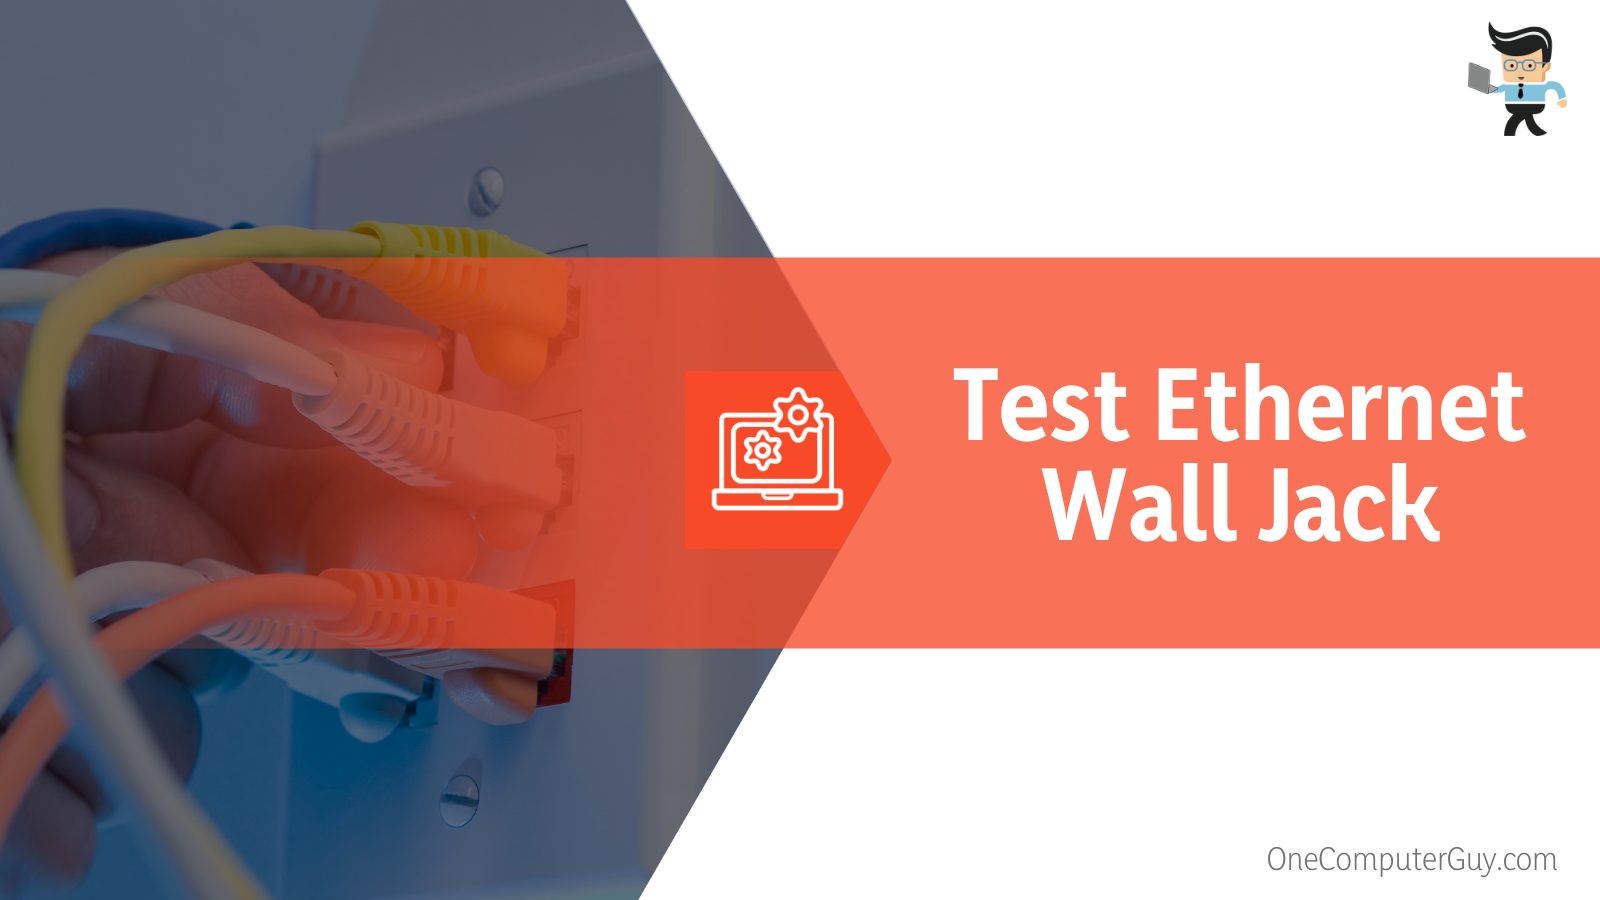 Test Ethernet Wall Jack